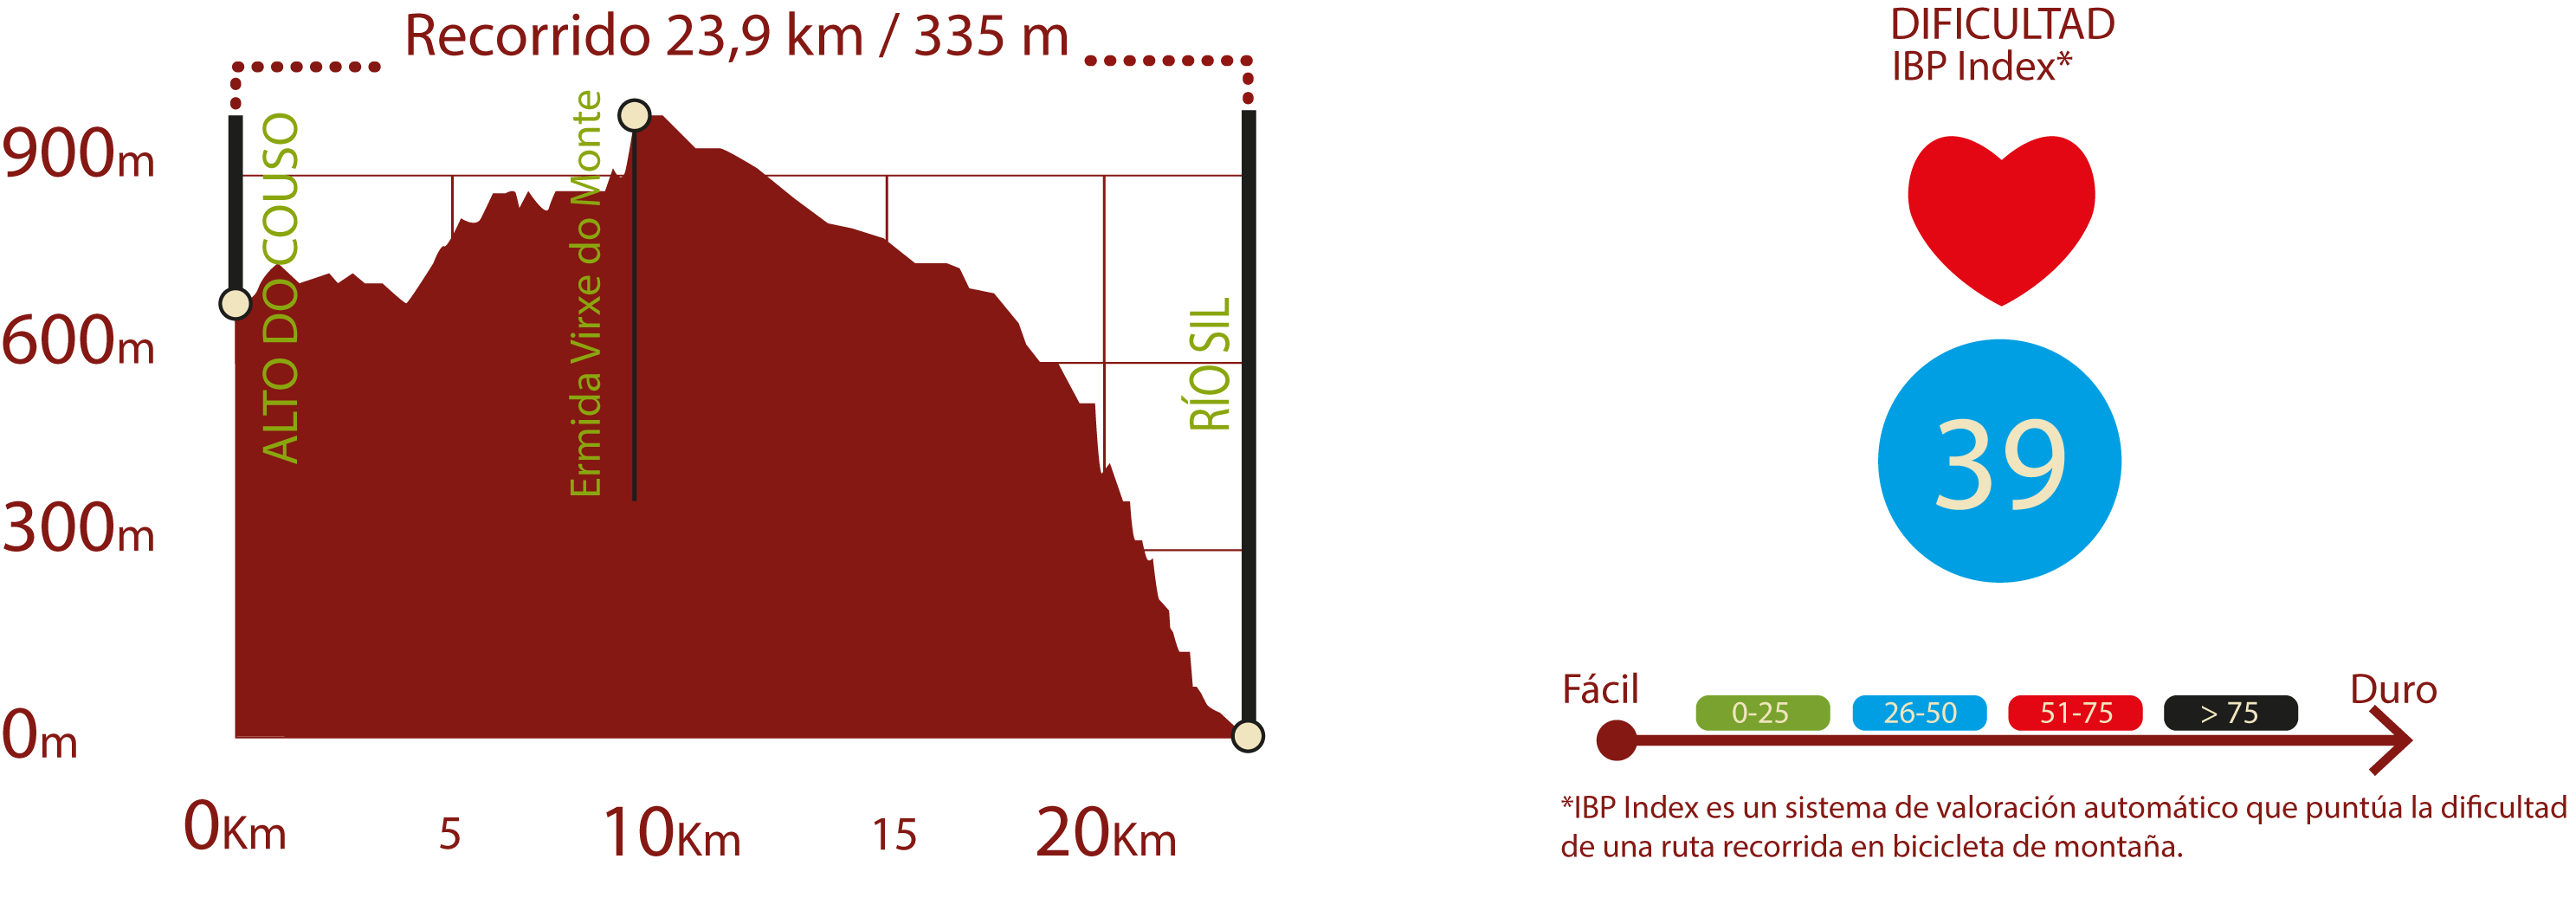 Perfil e IBP
Perfil del la ruta principal del CN de la Ribeira Sacra: 23,90 km / Desnivel de subida 335 m
IBP 39: Media

